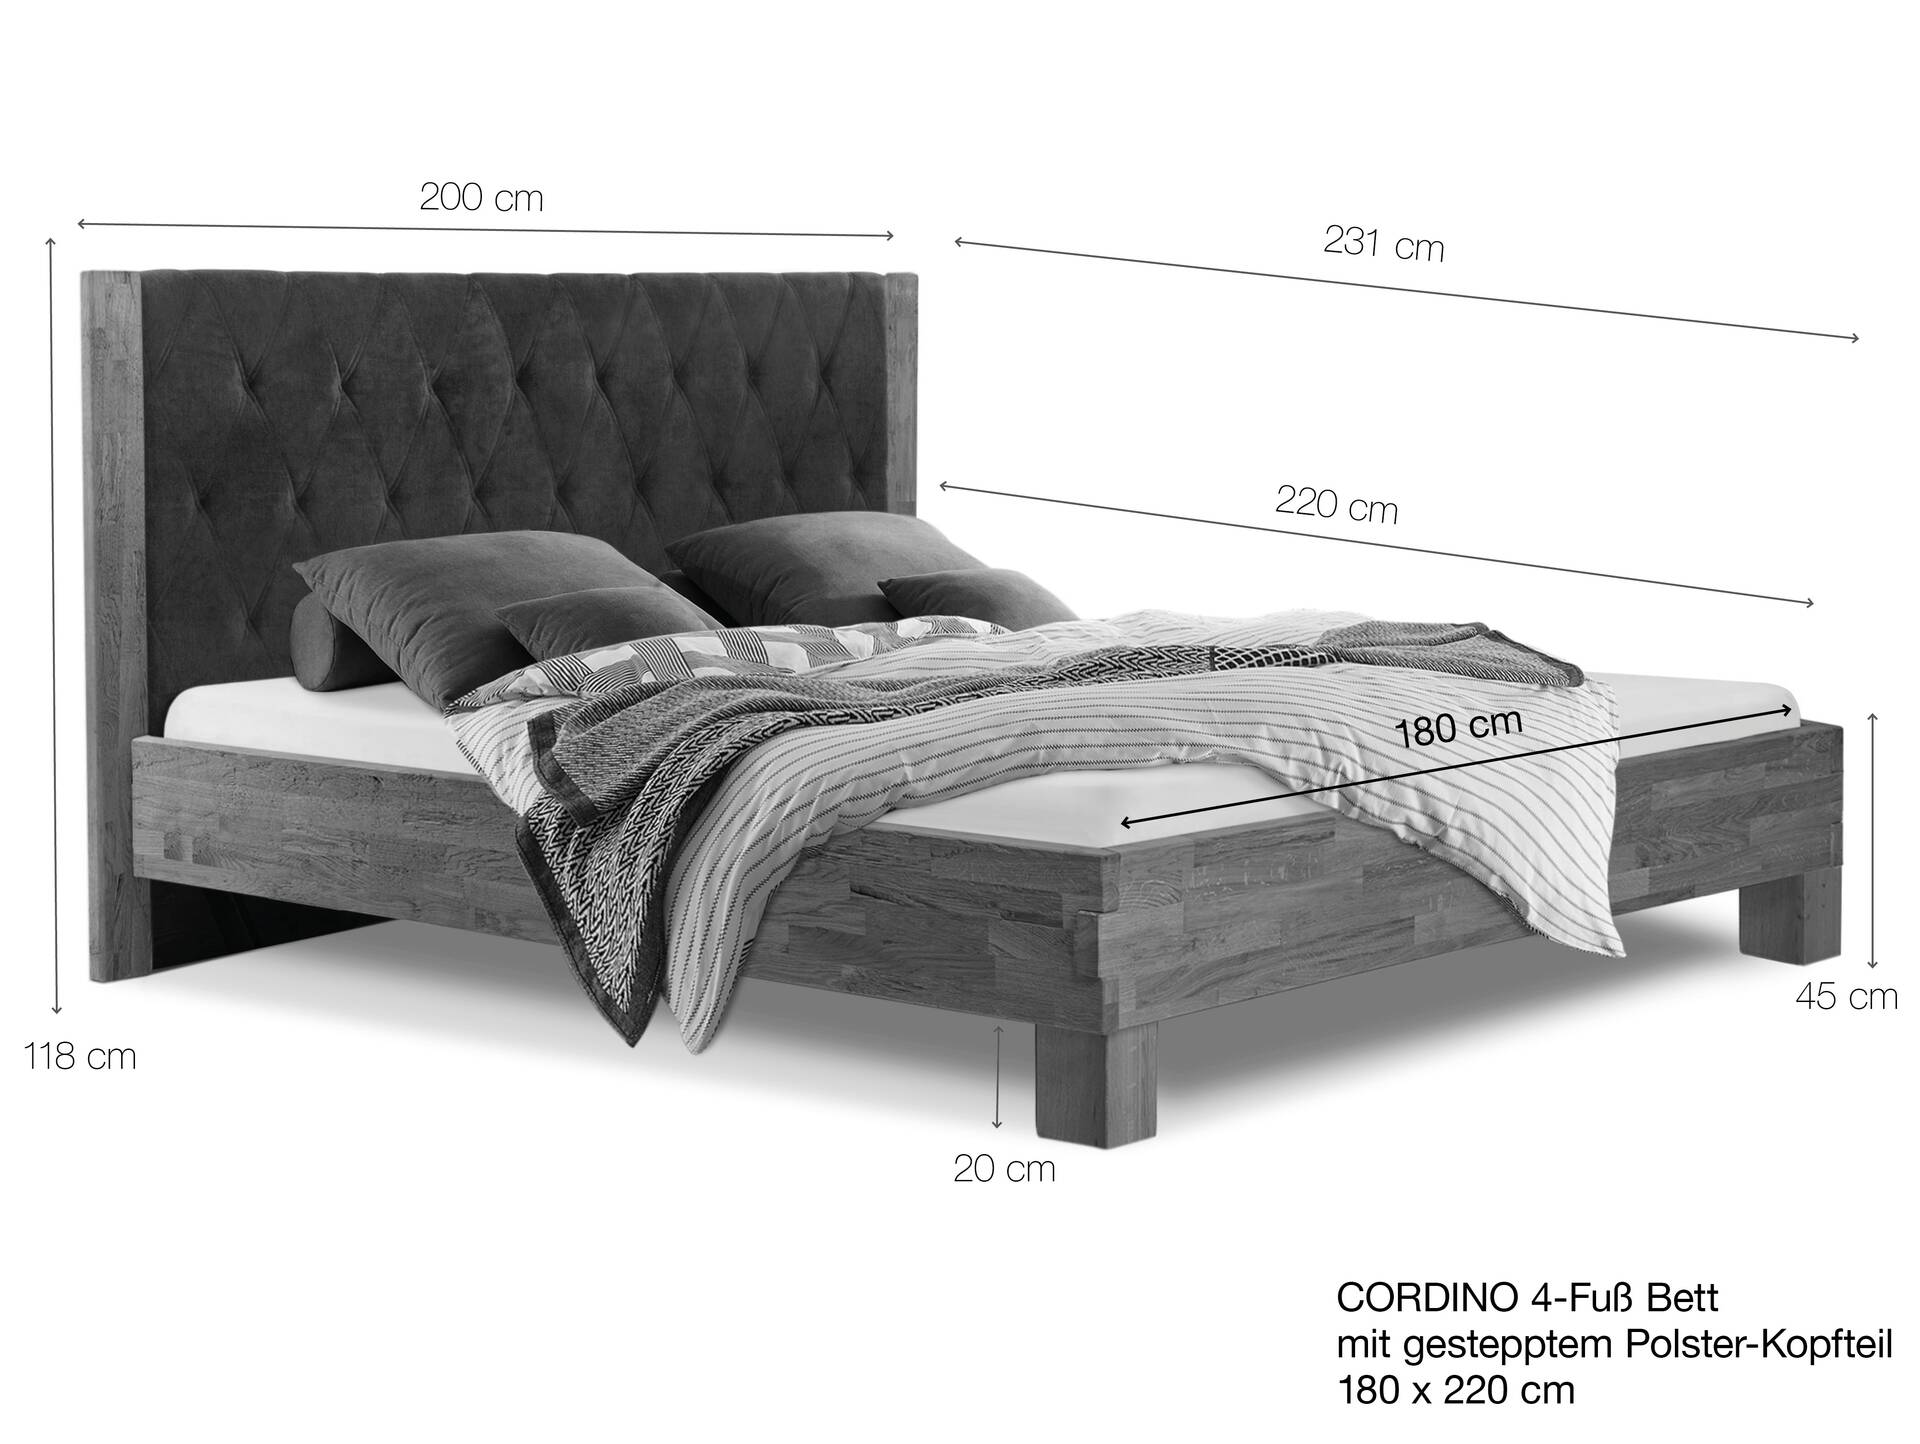 CORDINO 4-Fuß-Bett aus Eiche mit gestepptem Polster-Kopfteil, Material Massivholz 180 x 220 cm | Eiche unbehandelt | Kunstleder Schwarz | gebürstet